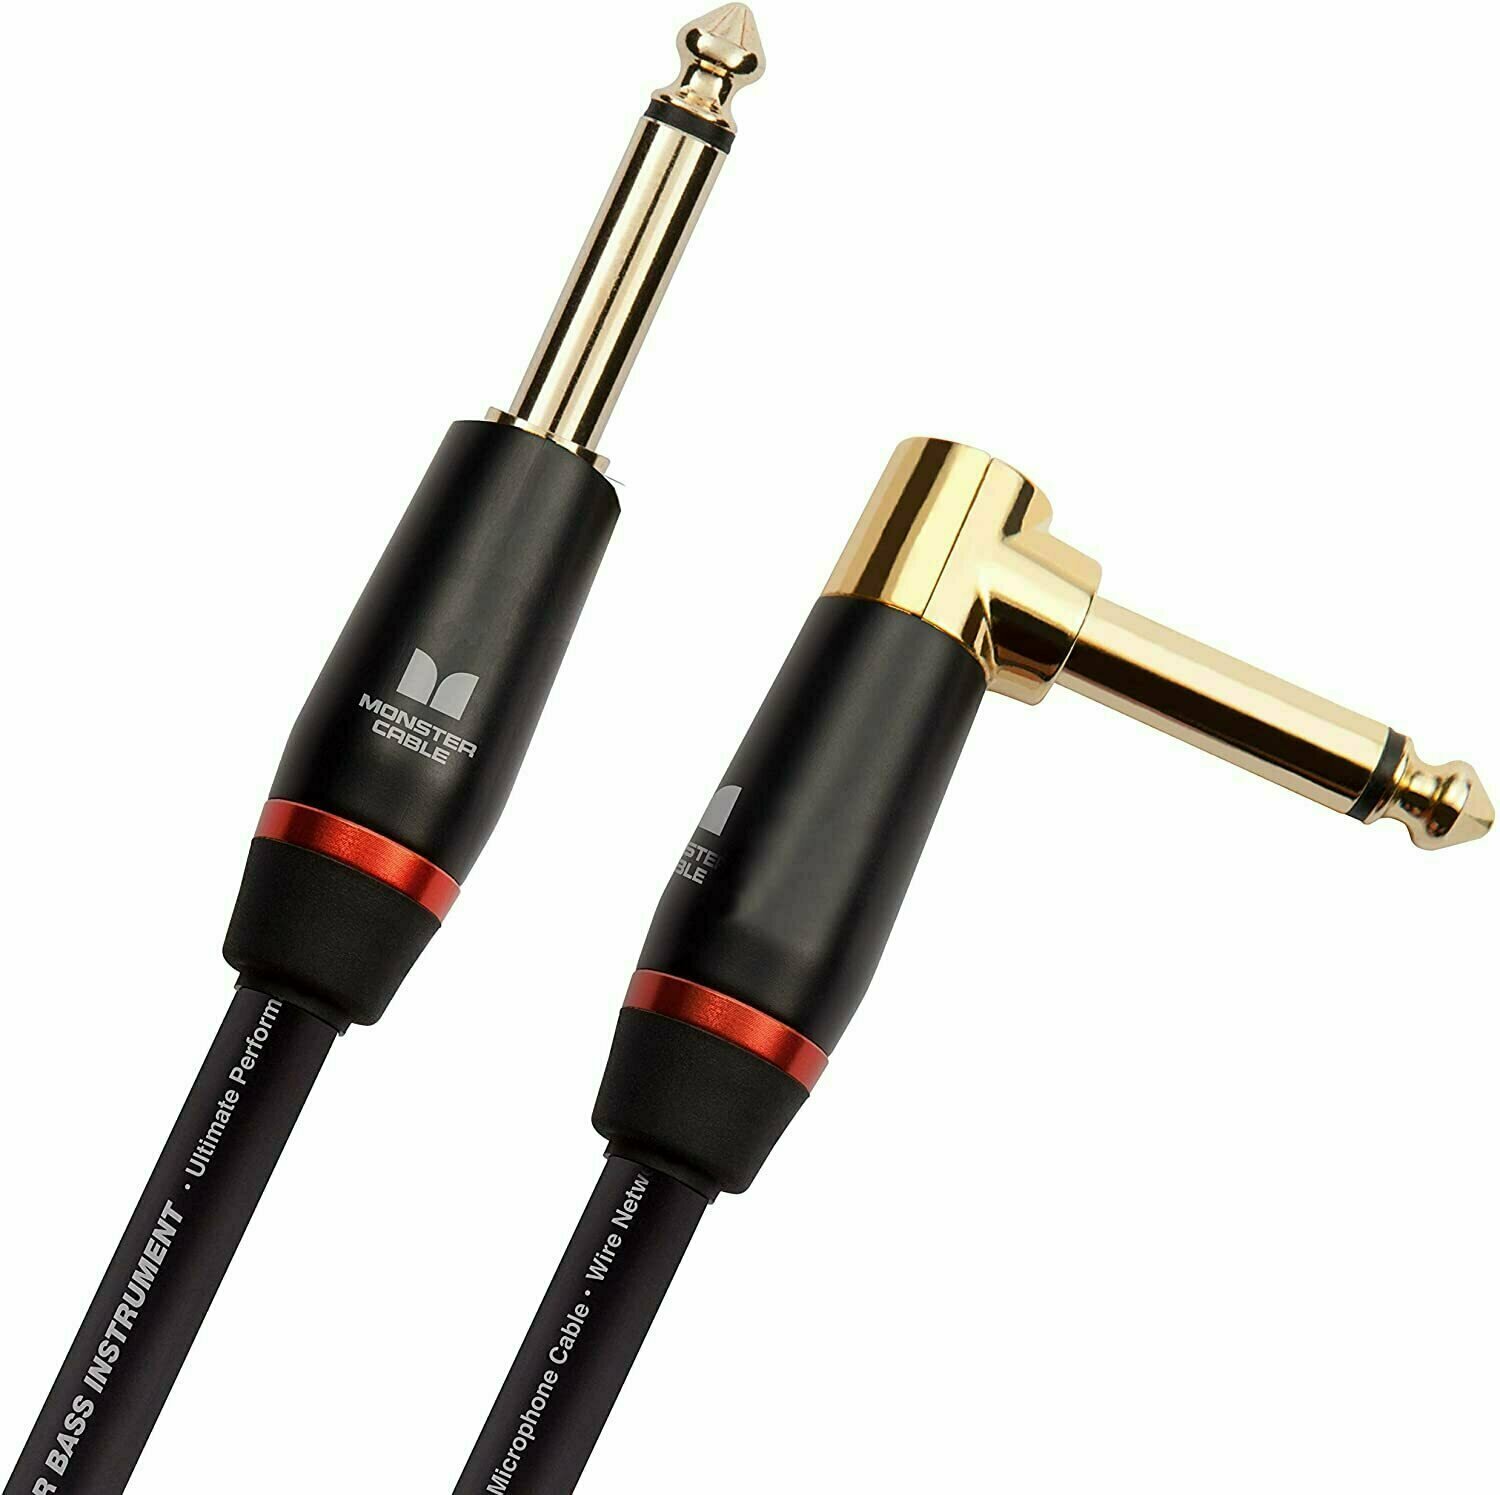 Καλώδιο Μουσικού Οργάνου Monster Cable Prolink Bass 21FT Instrument Cable Μαύρο χρώμα 6,4 m Angled-Straight